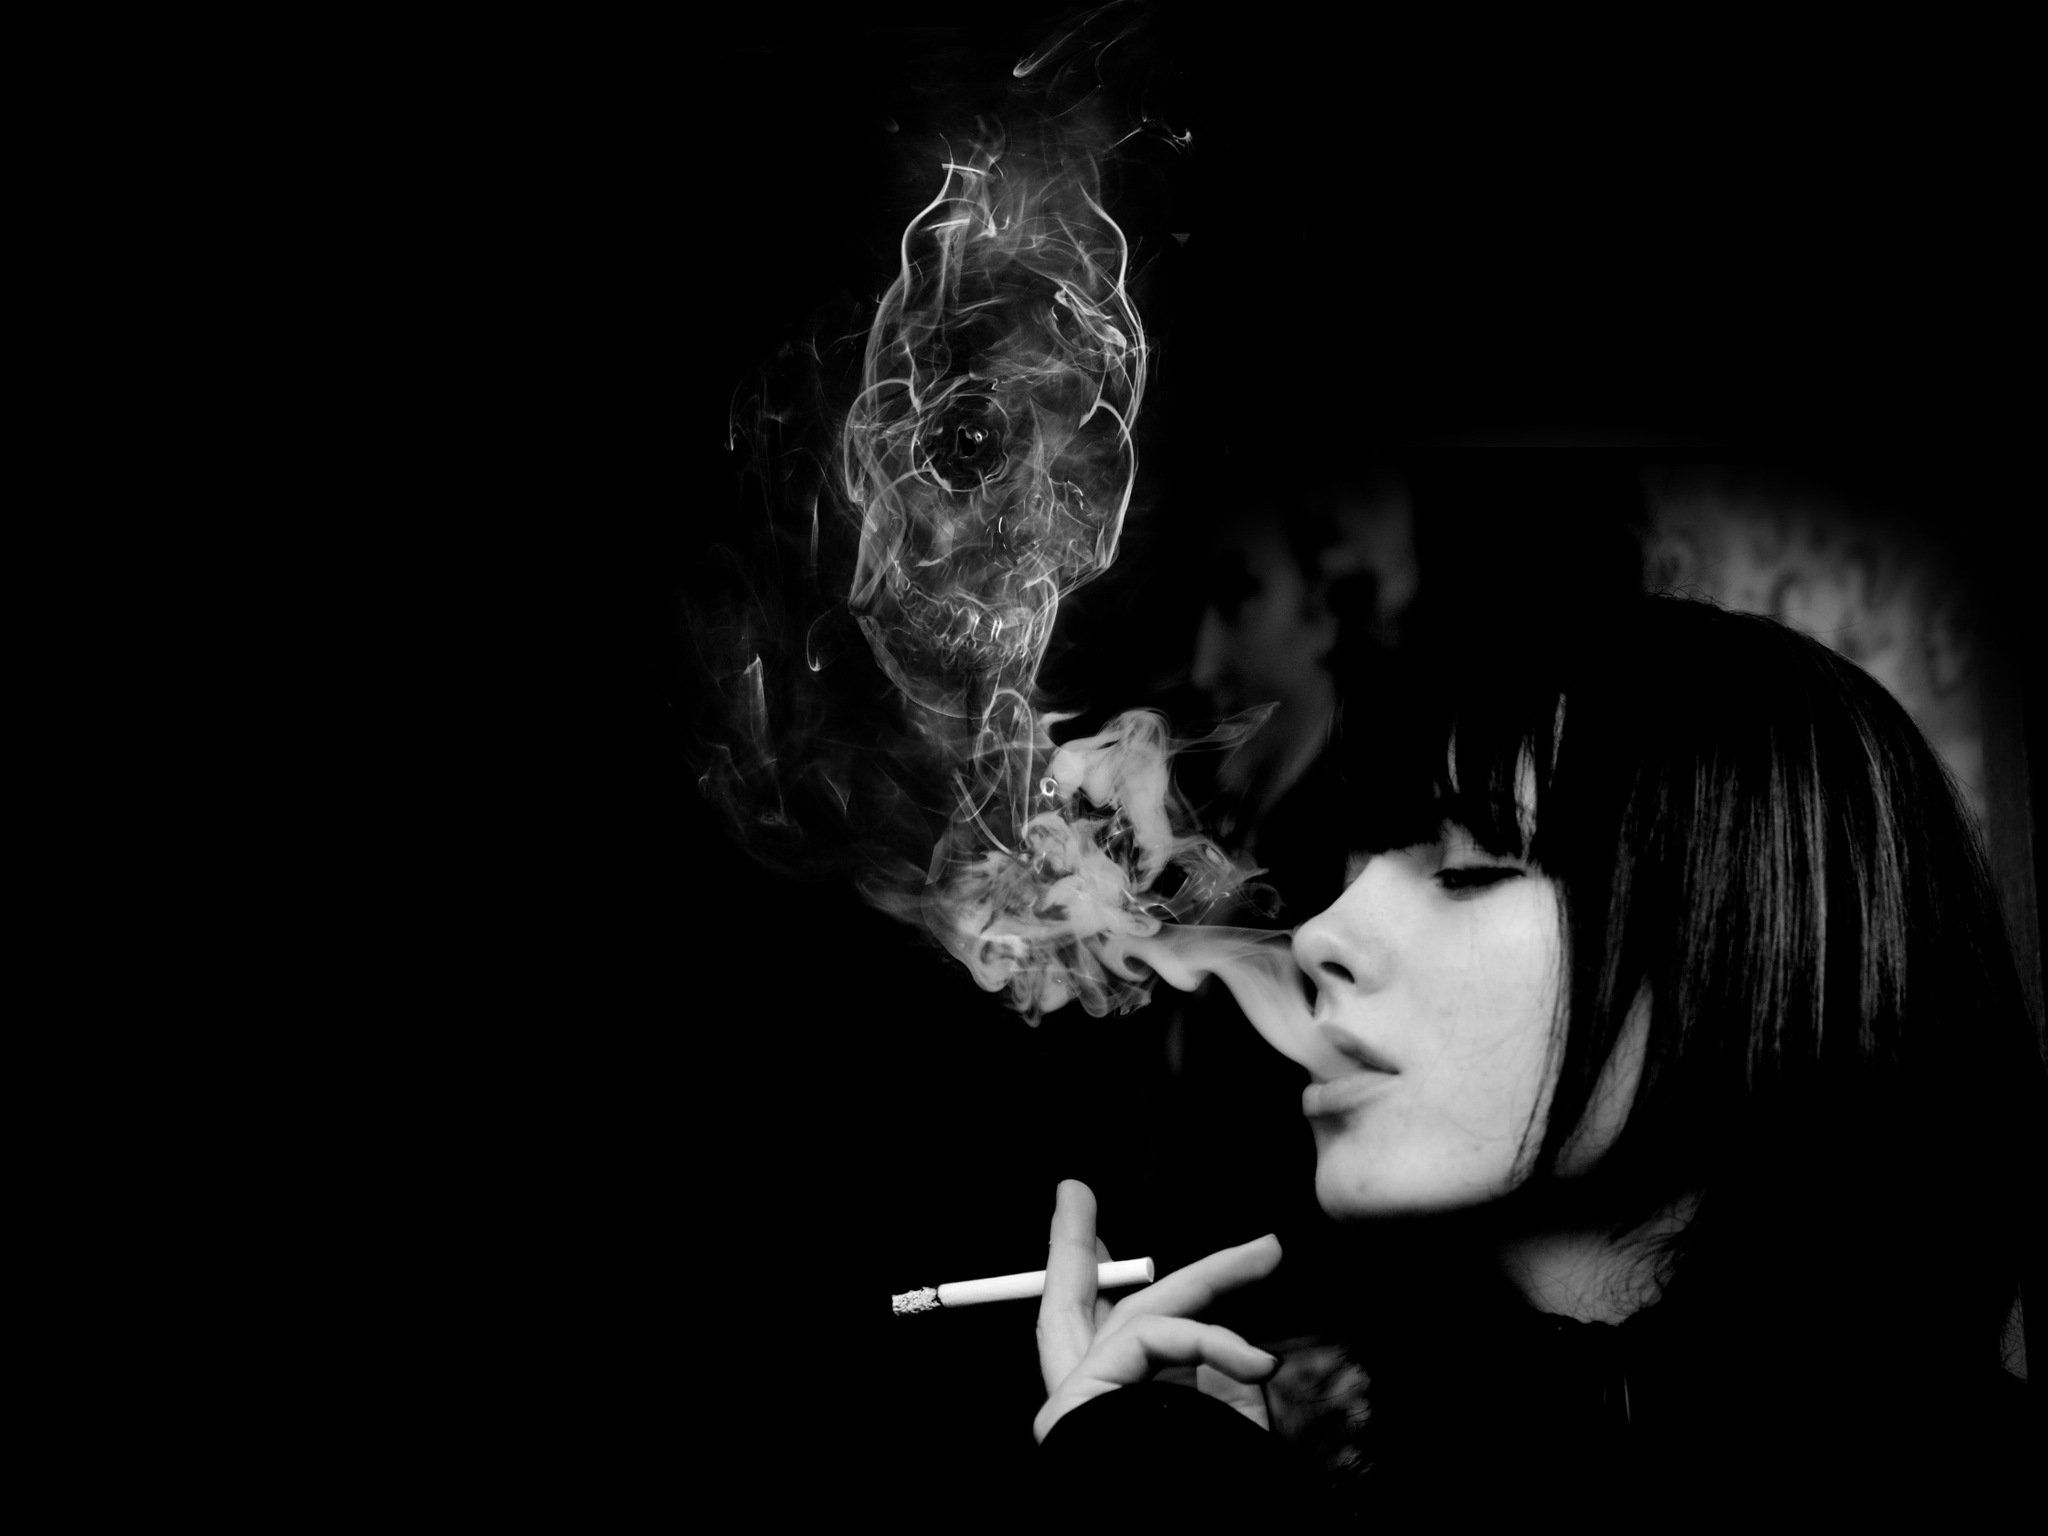 Cùng xem ảnh anime nữ ngầu hút thuốc với phong cách cực kỳ bắt mắt